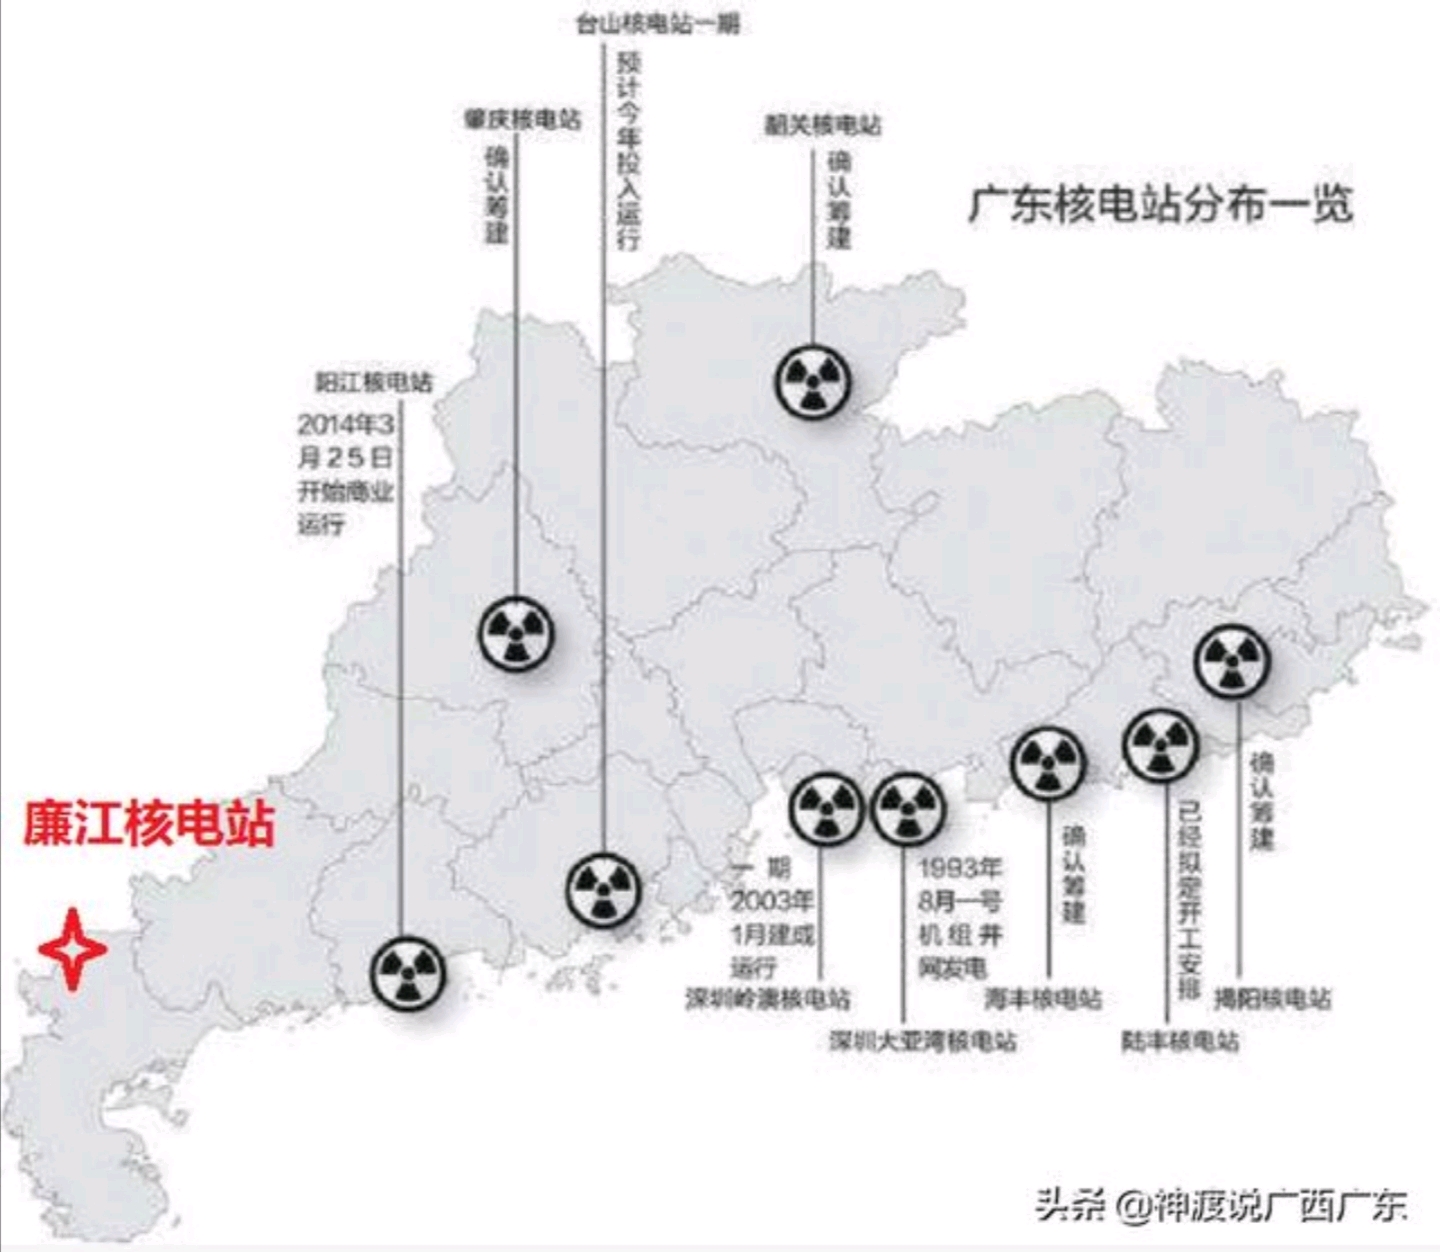 广东十大核电站分布第十座:廉江核电站廉江核电站,位于广东省湛江廉江